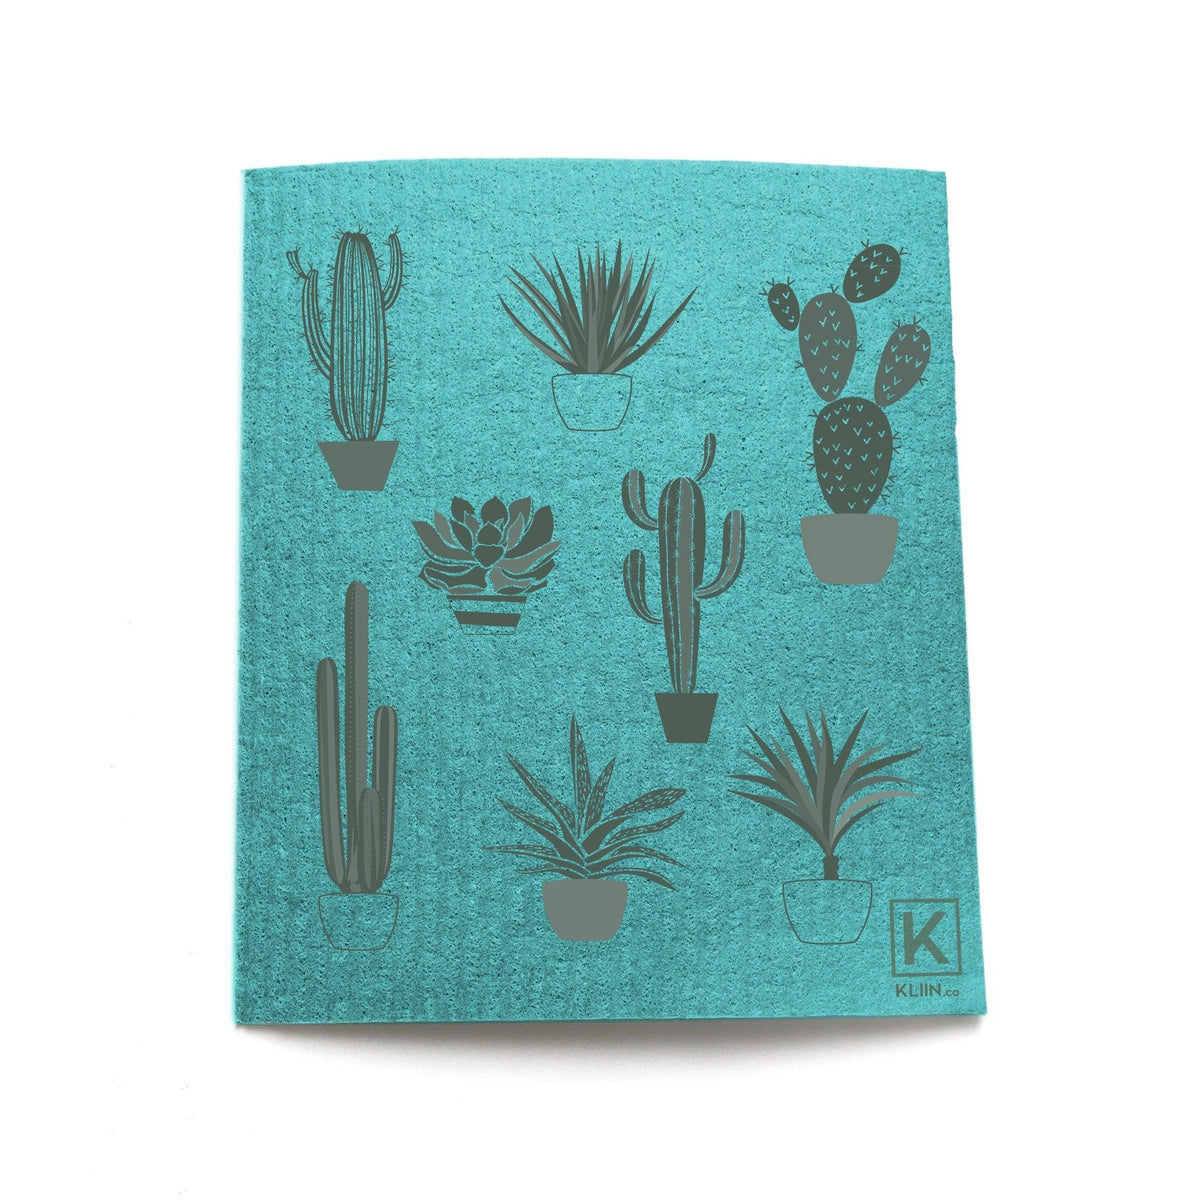 KLIIN | L'Essuie-tout réutilisable compostable | Petit | Cactus - KLIIN